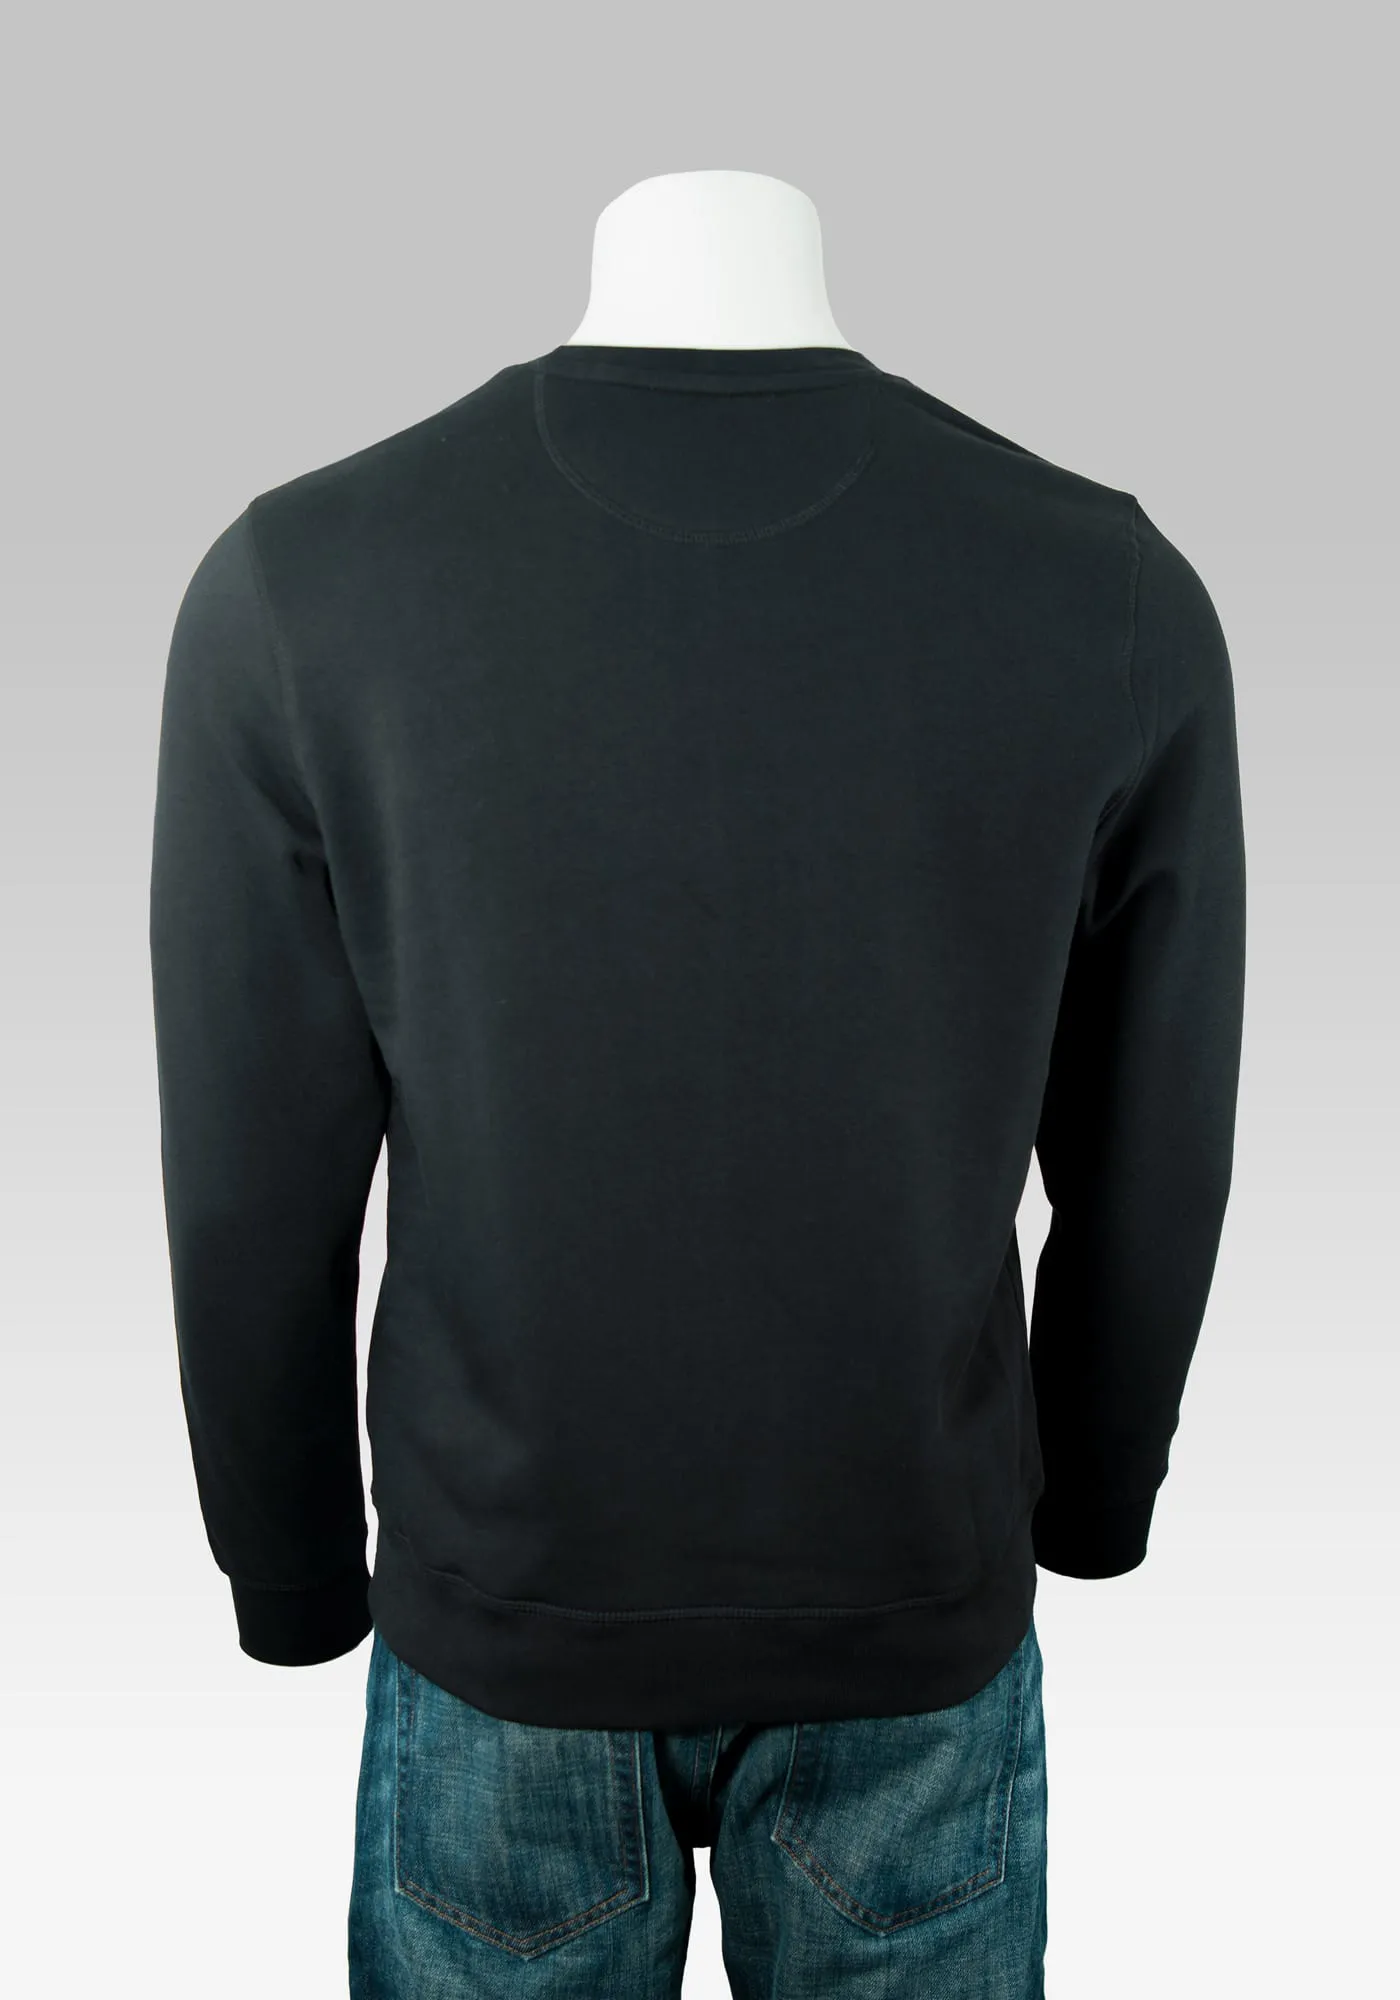 Hollowpuppe von hinten mit dem schwarzen Sweater ohne Rückenprint